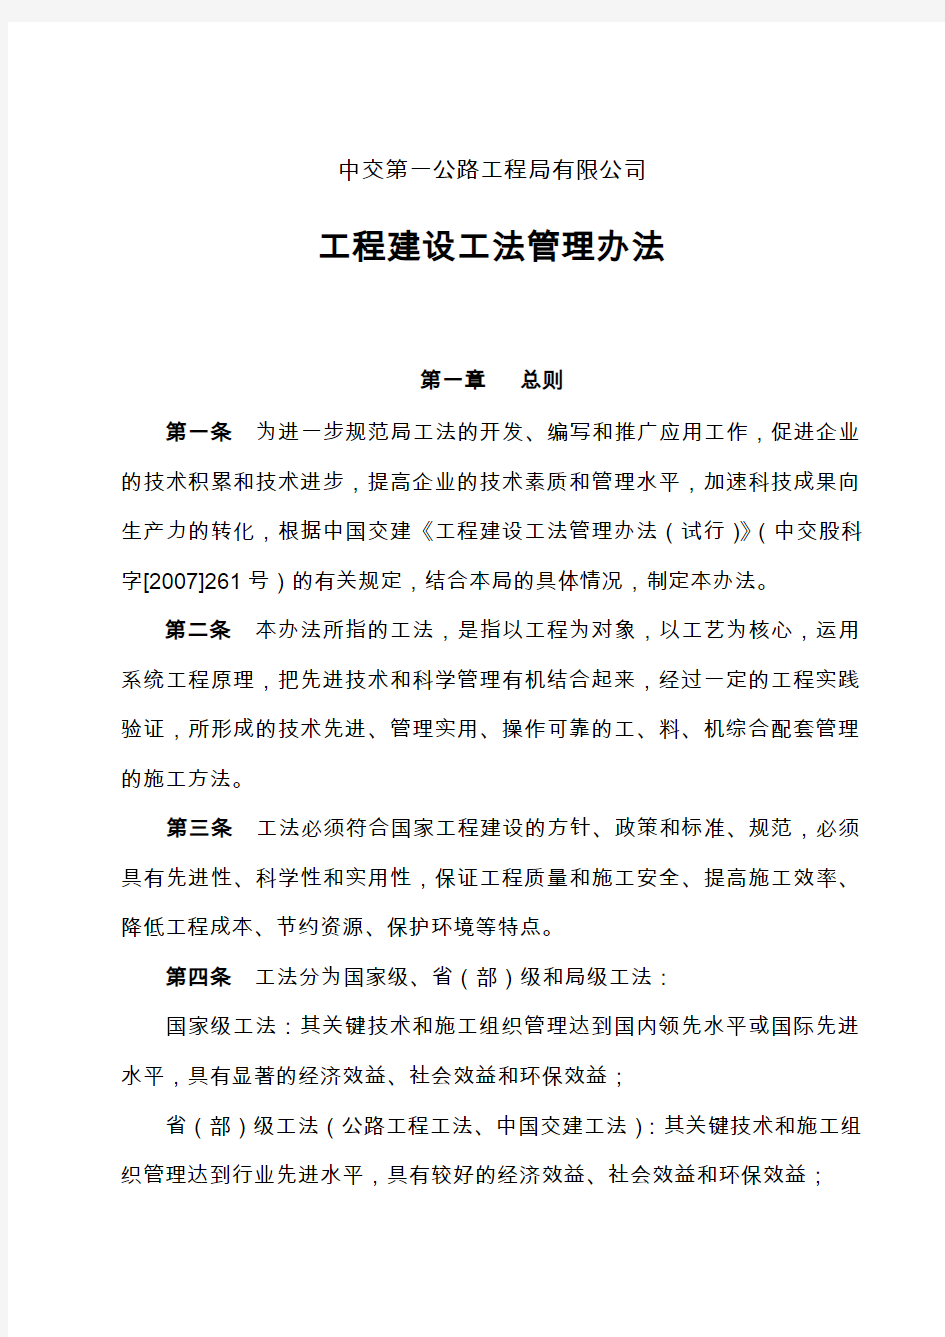 中交第一公路工程局有限公司工程建设工法管理办法( 2014修订)